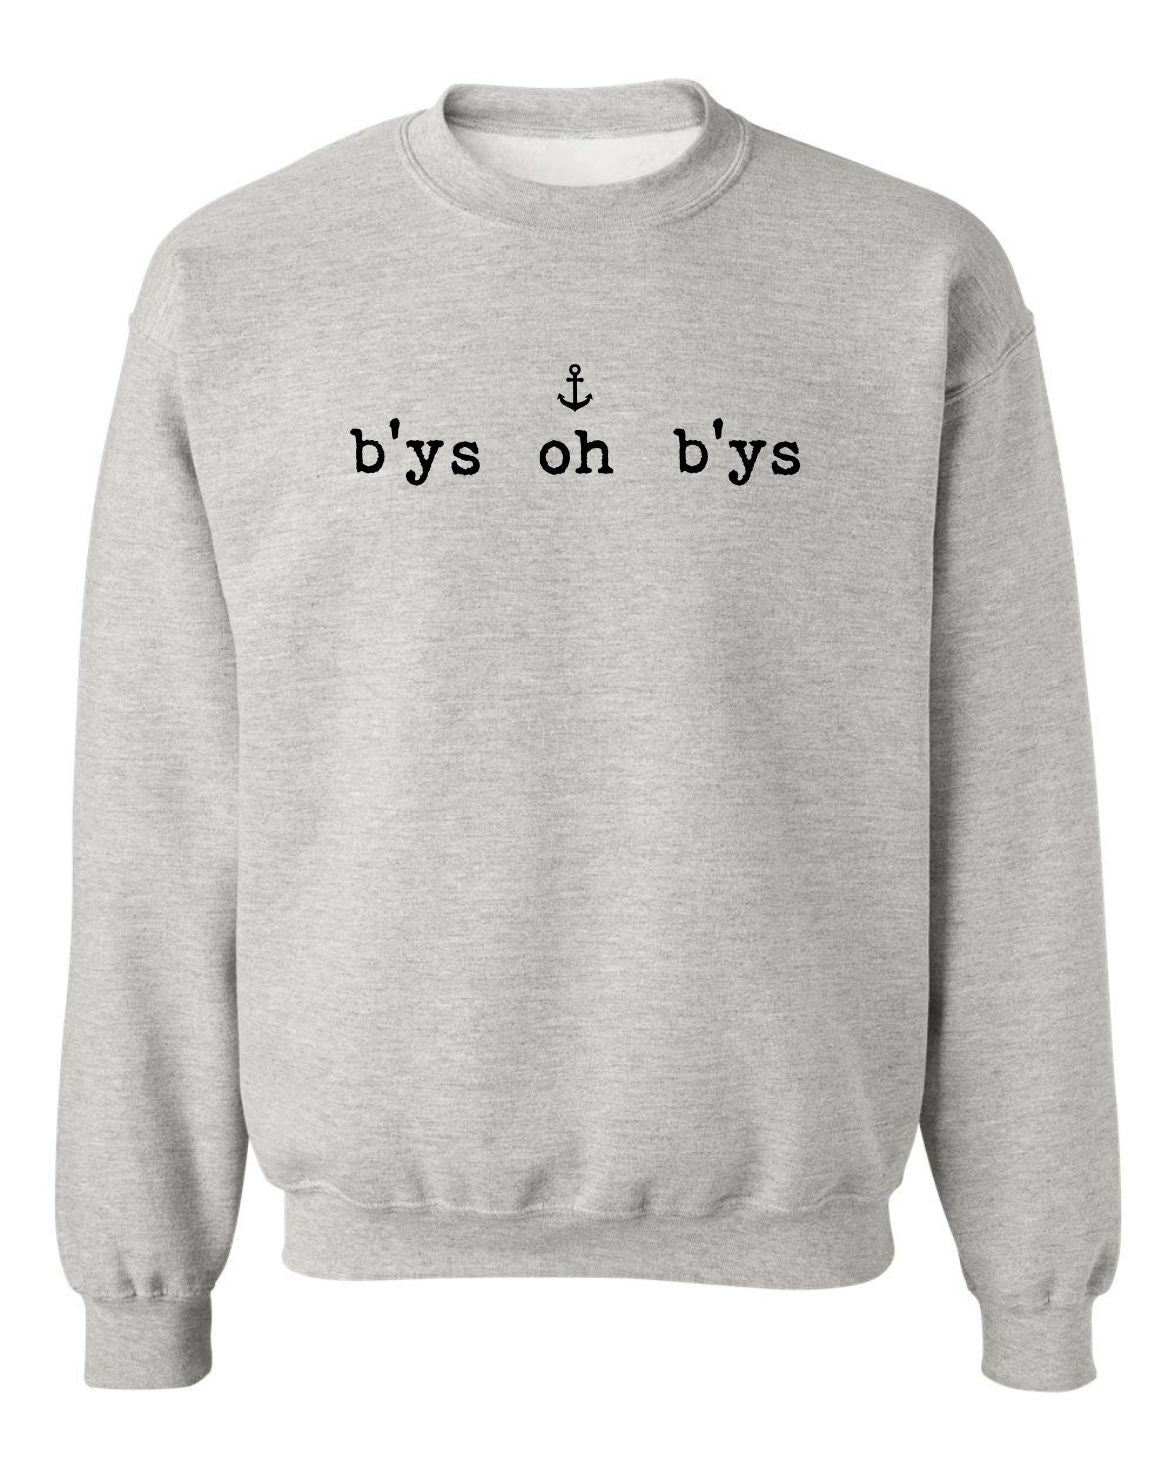 "B'ys Oh B'ys" Unisex Crewneck Sweatshirt